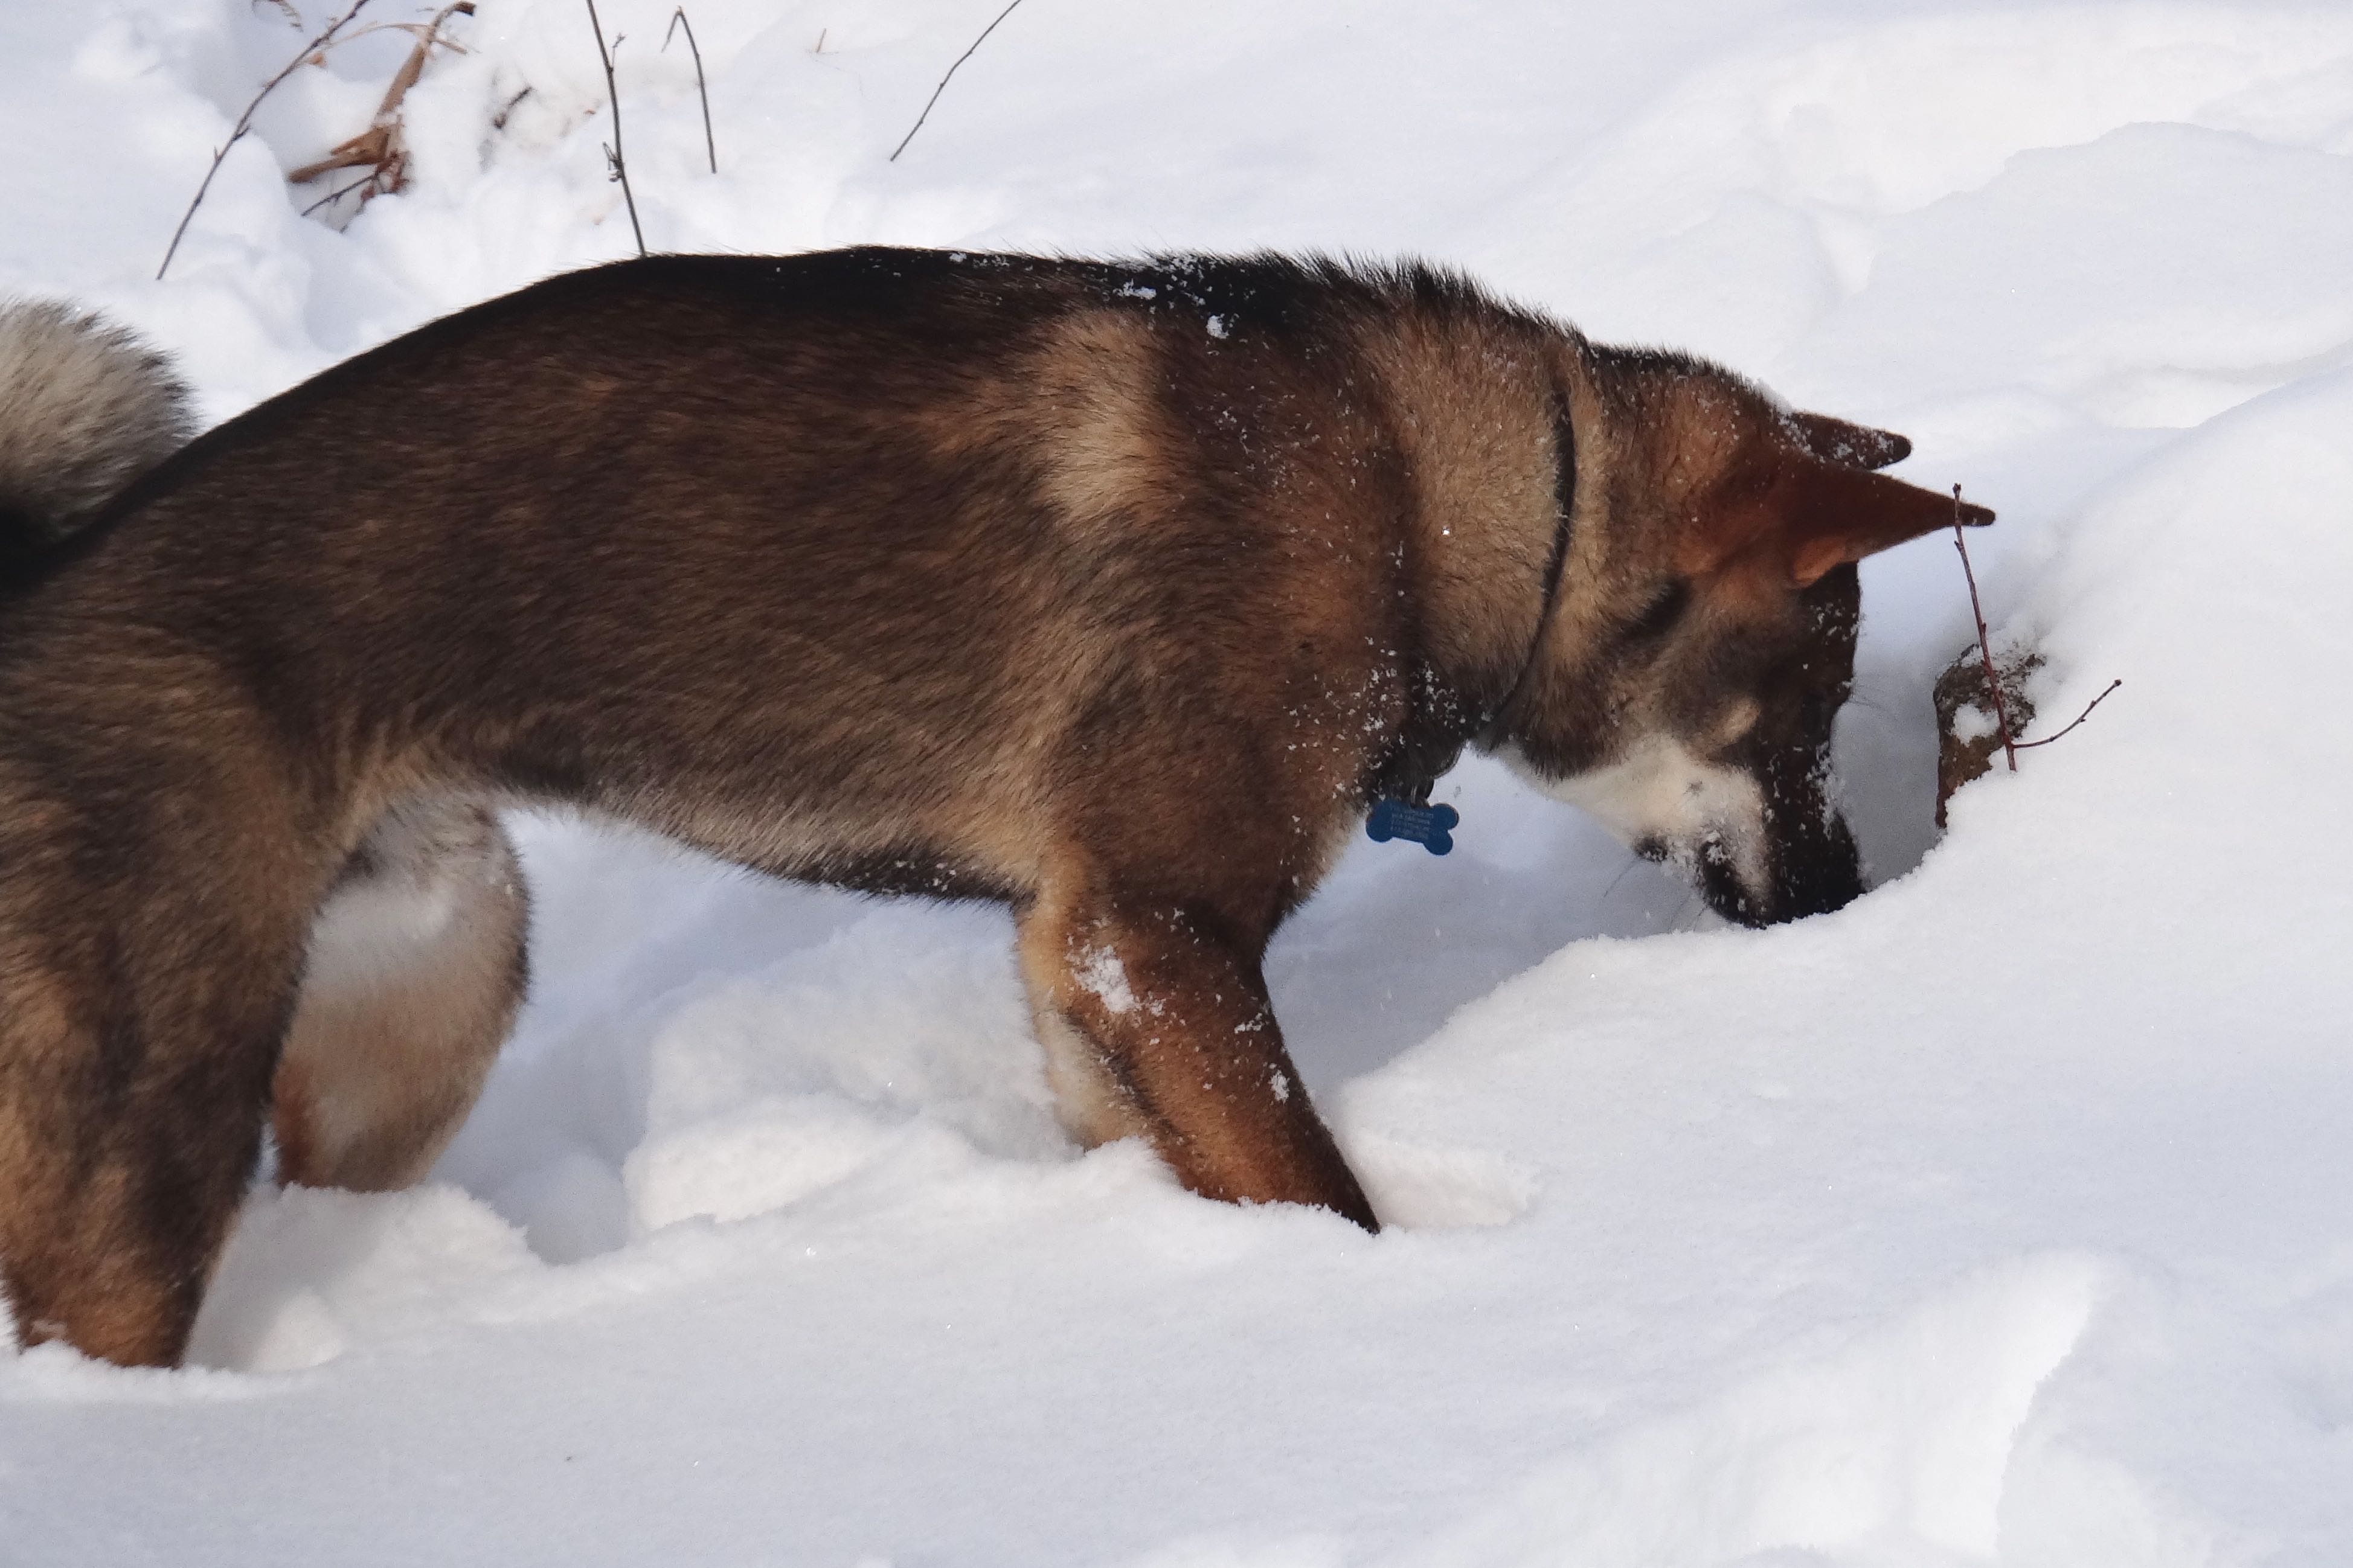 Hiro digging in snow - Akitsu Shikoku Ken